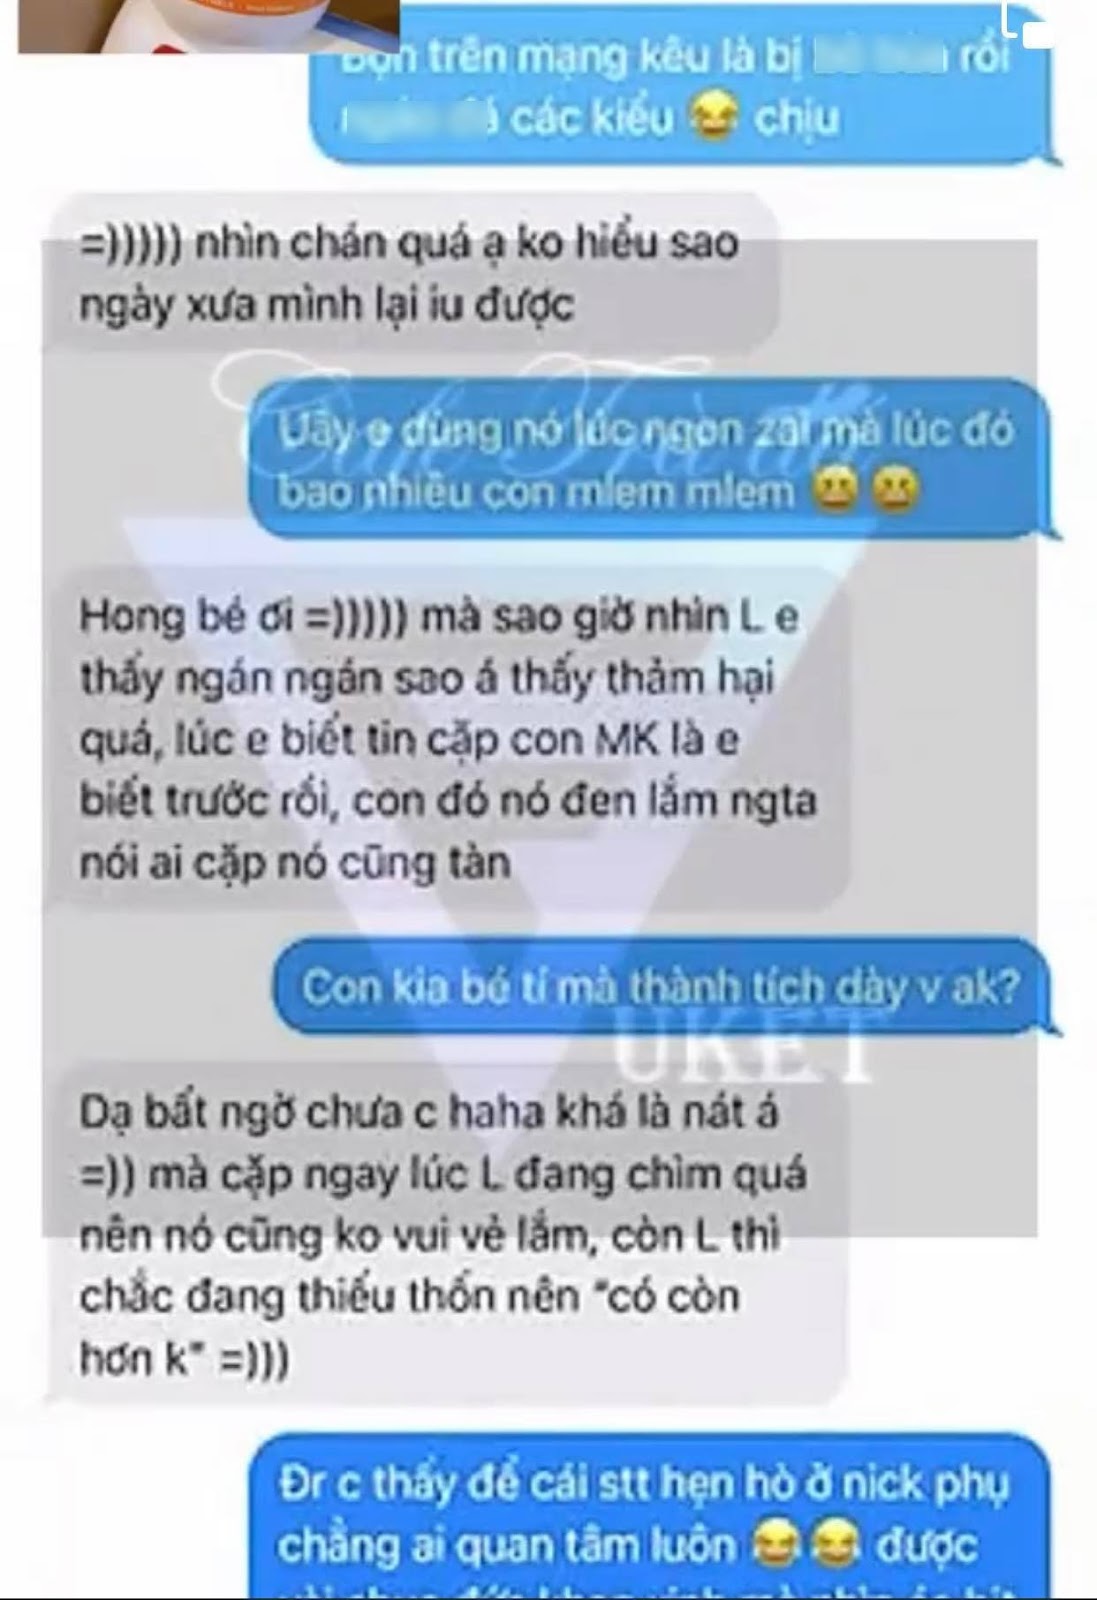 Cindy Lư bị rò rỉ tin nhắn nói xấu Hoài Lâm và bạn gái mới: Ngán, không hiểu sao ngày xưa yêu được! - Hình 3